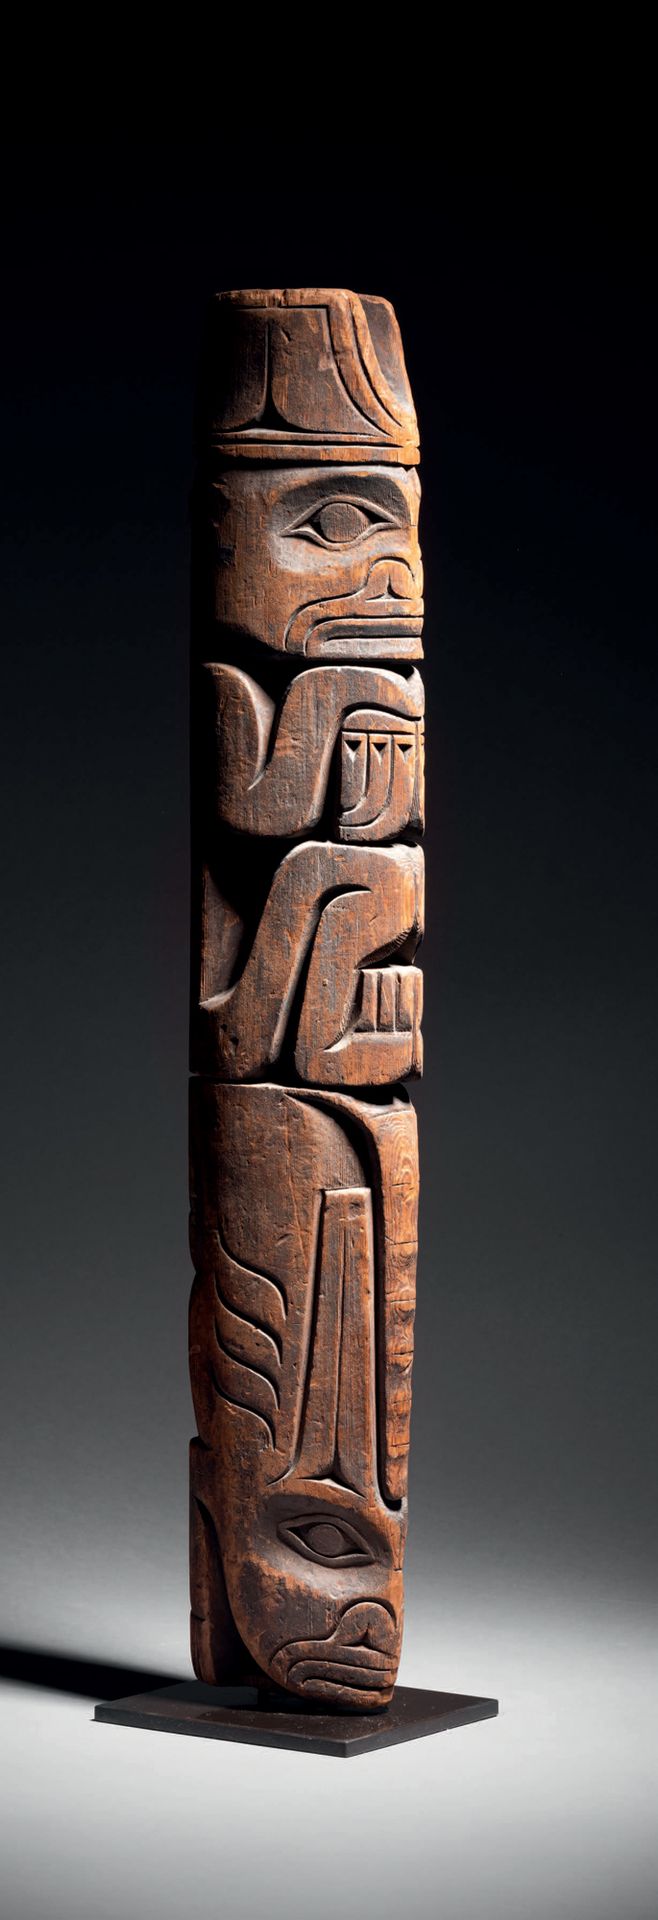 Null Totem, British Columbia, Canada
Inizio XX secolo
Legno intagliato
H. 57 cm
&hellip;